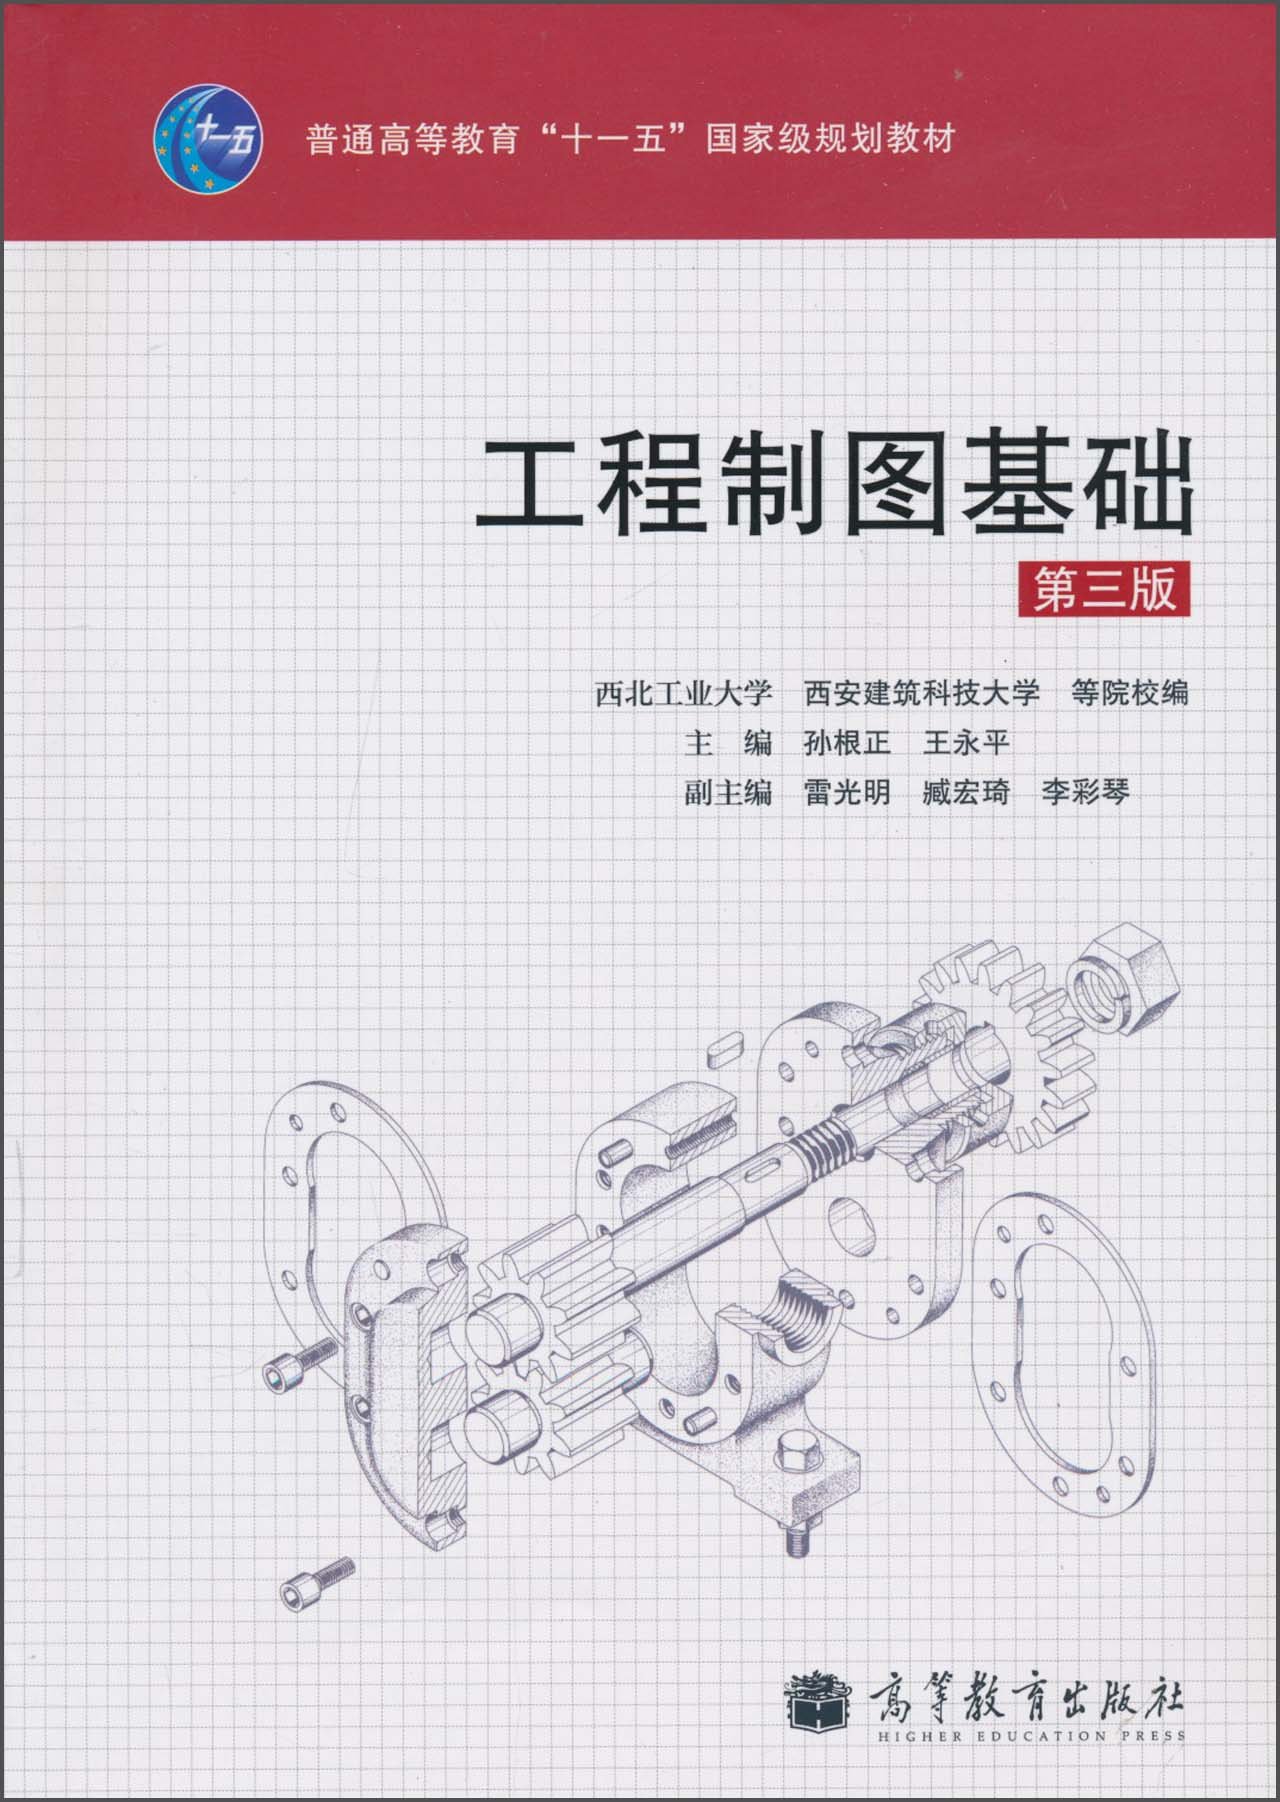 工程製圖基礎（第三版）(2010年高等教育出版社出版的圖書)